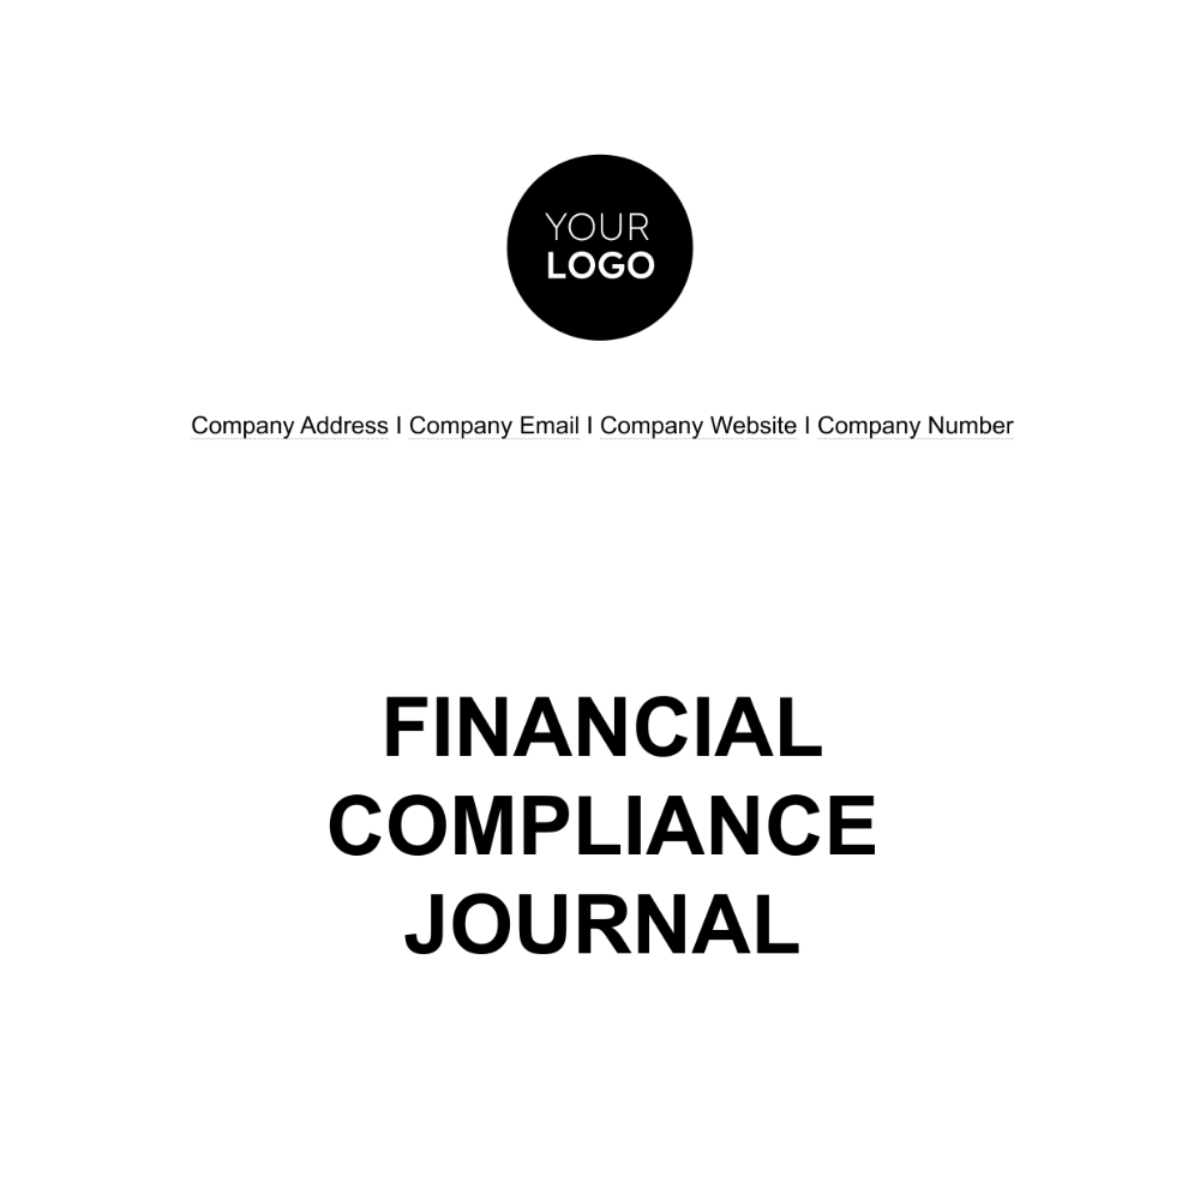 Financial Compliance Journal Template